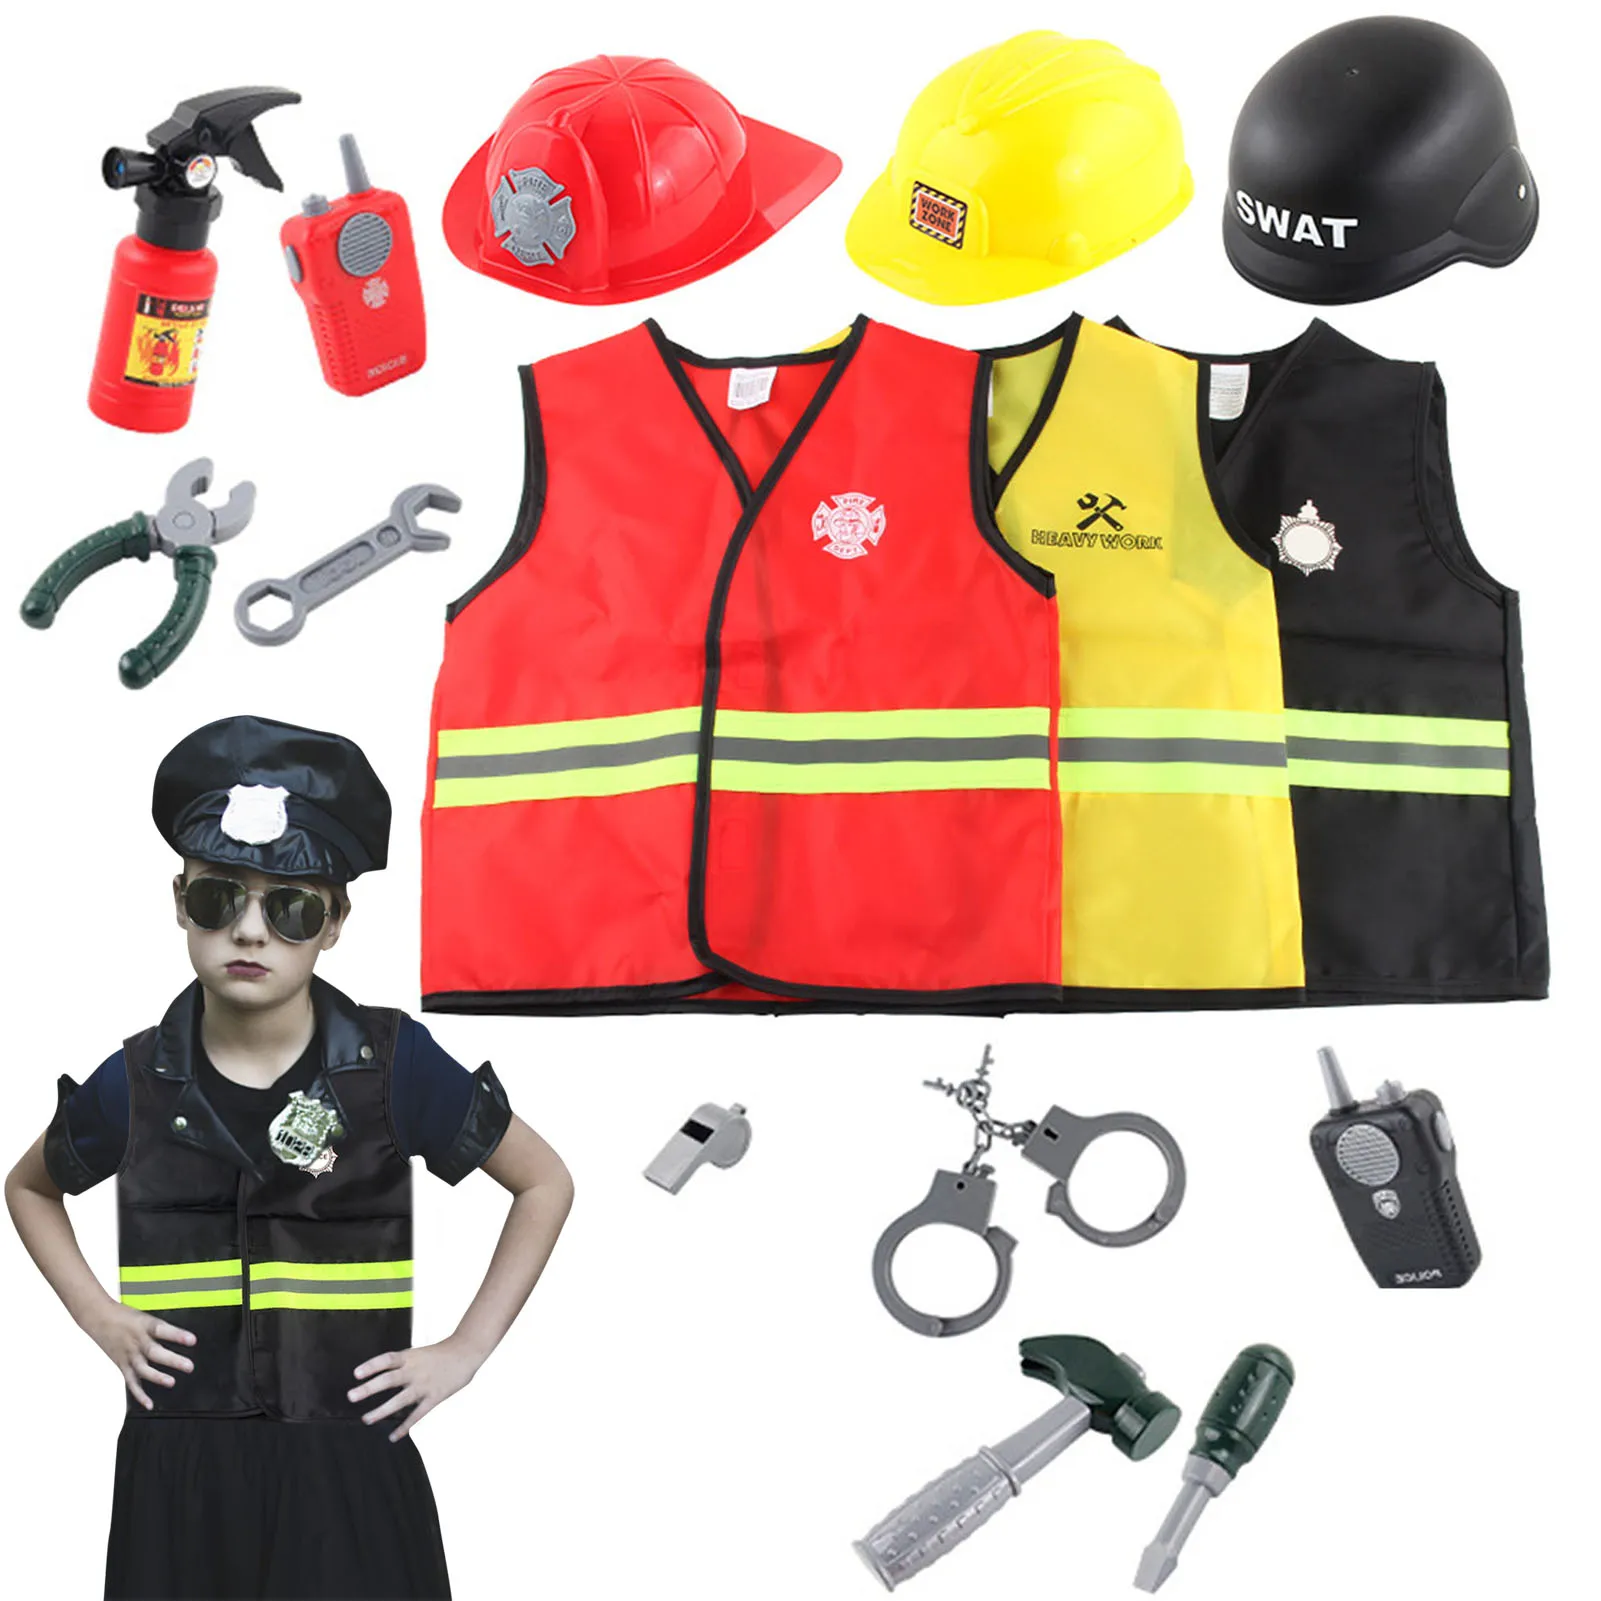 

Карьерный костюм для косплея для детей Детская одежда для пожарного полицейского инженера карьерный Косплей Набор с аксессуарами